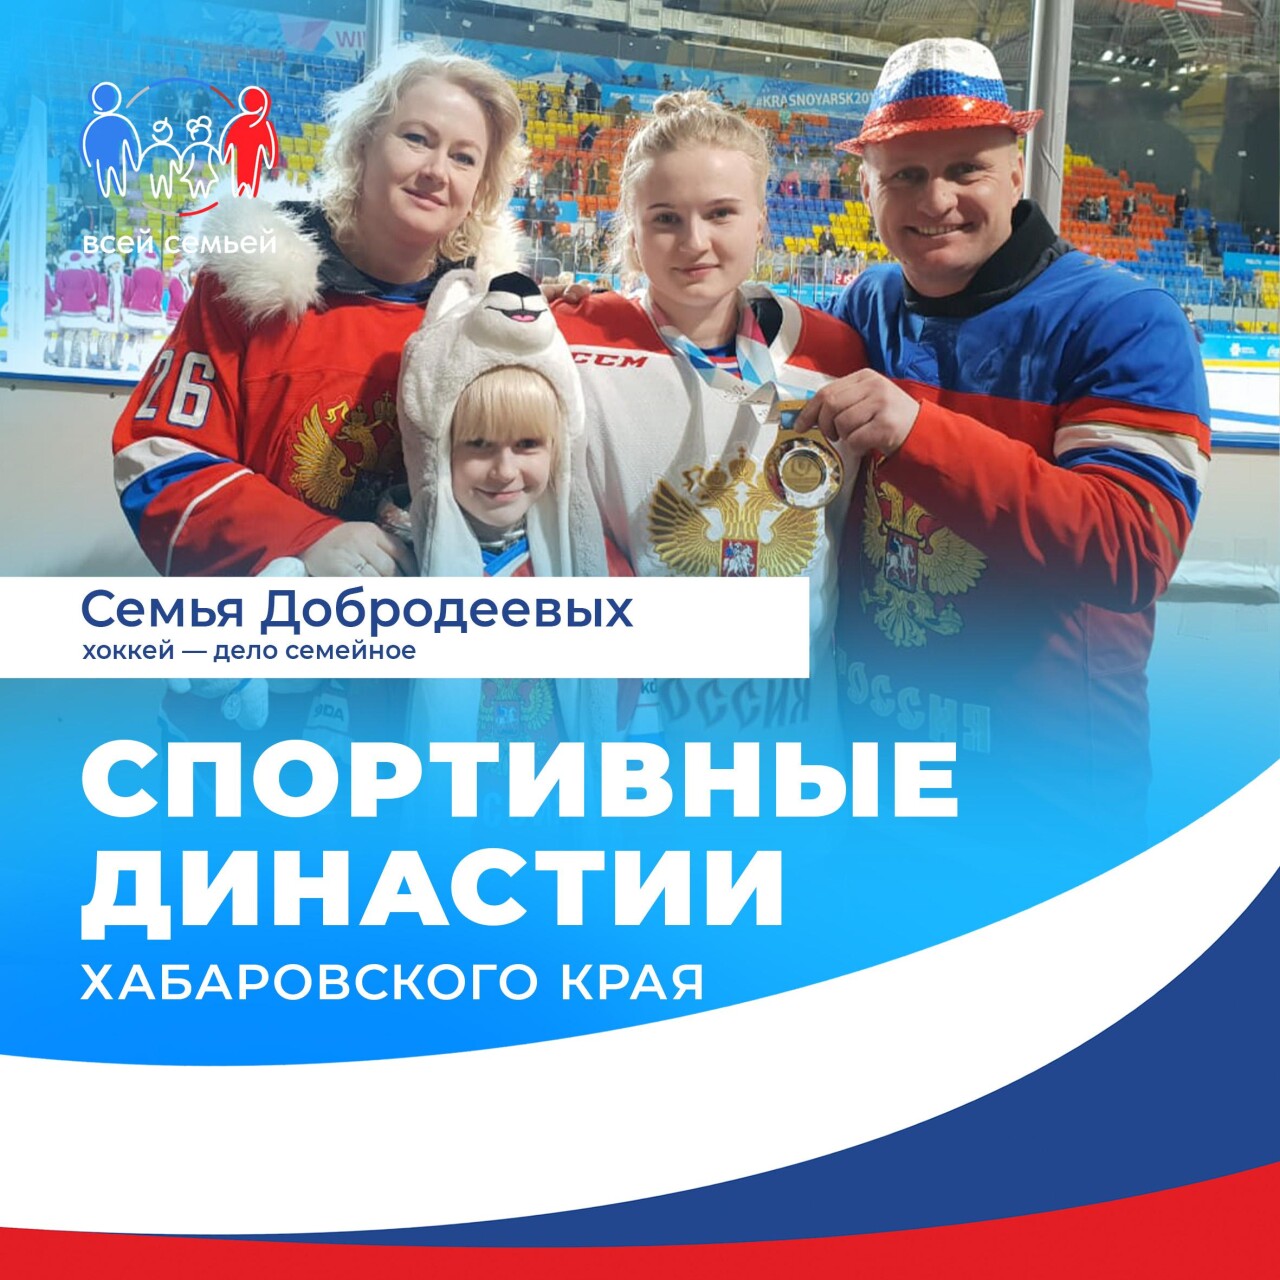 Хоккей – дело семейное! Отличным тому примером служит семья Добродеевых из Хабаровского края.